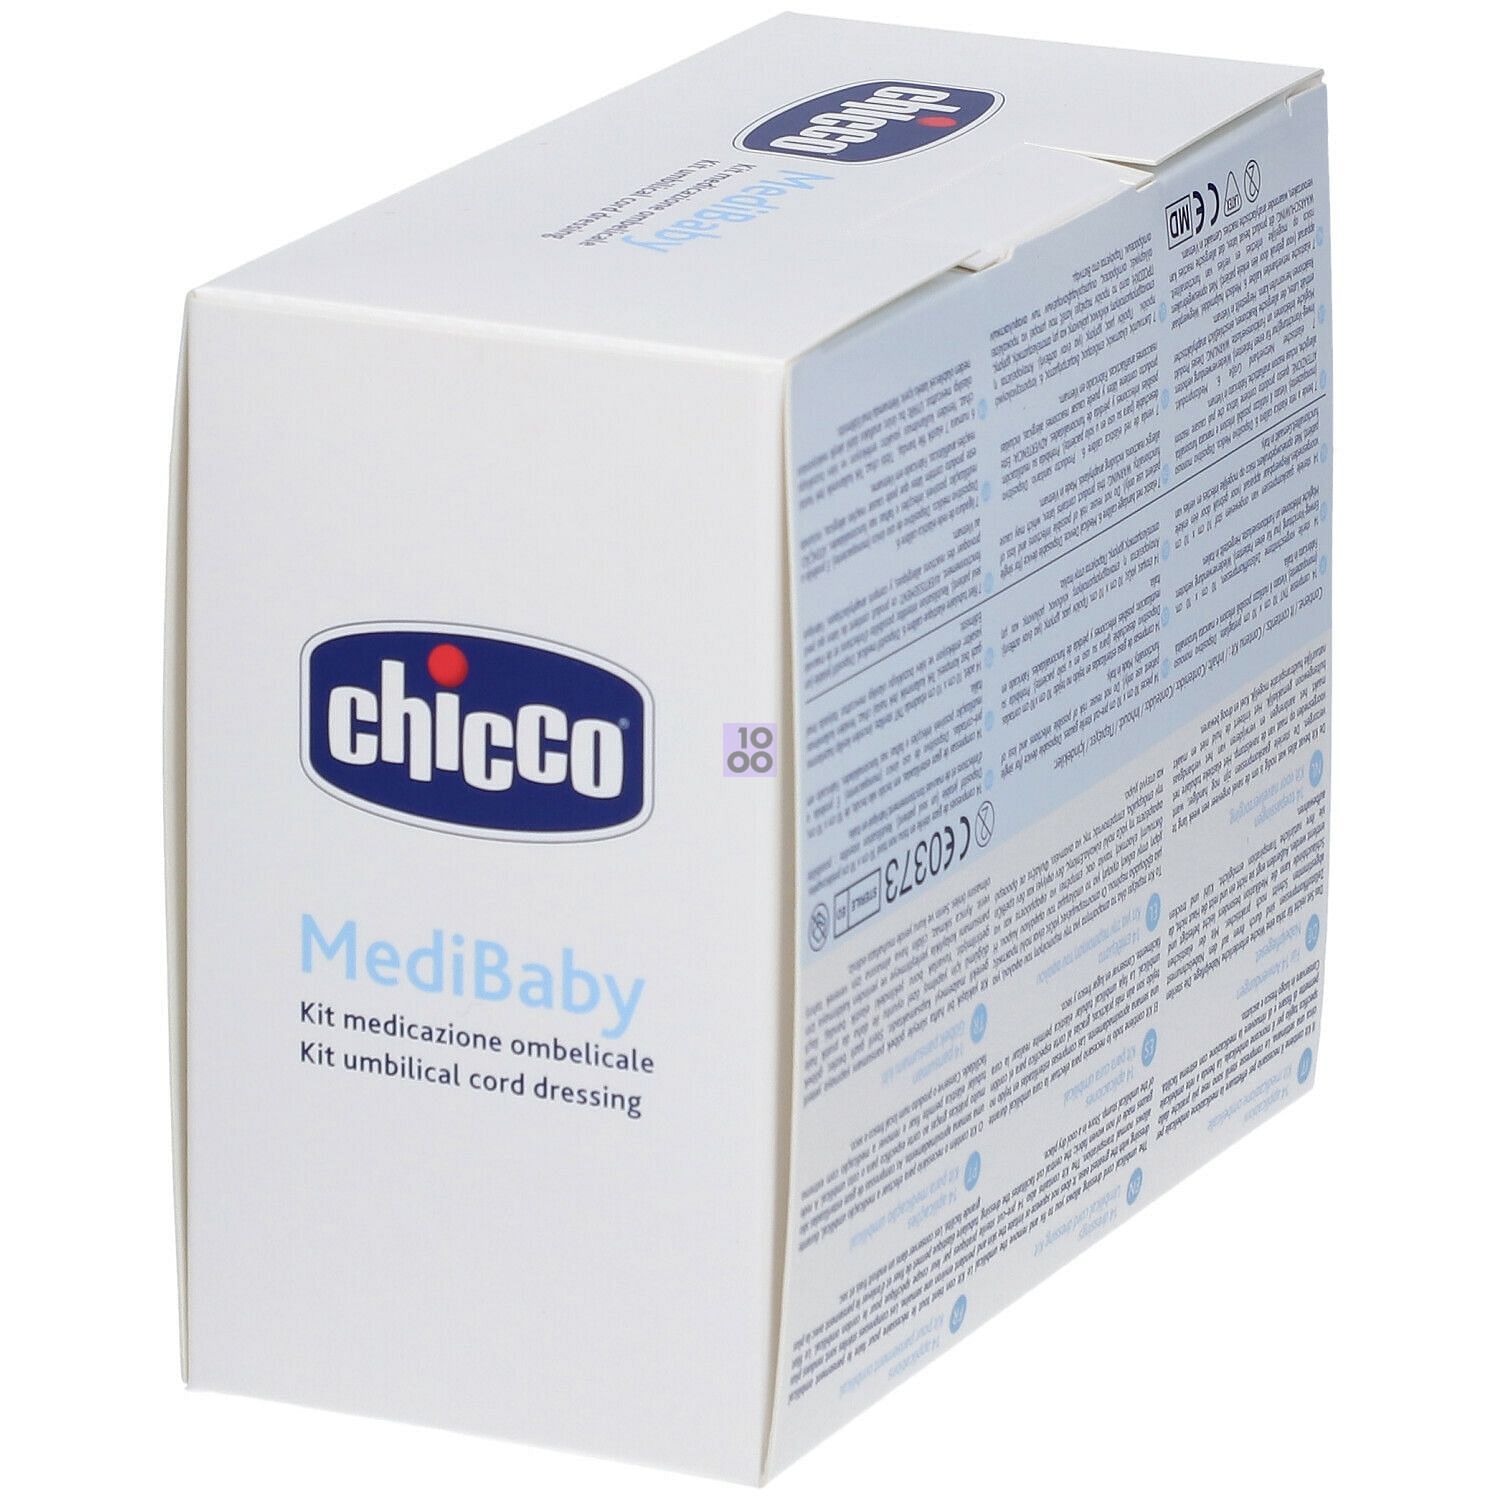 Chicco Kit medicazione ombelicale - cura neonato 